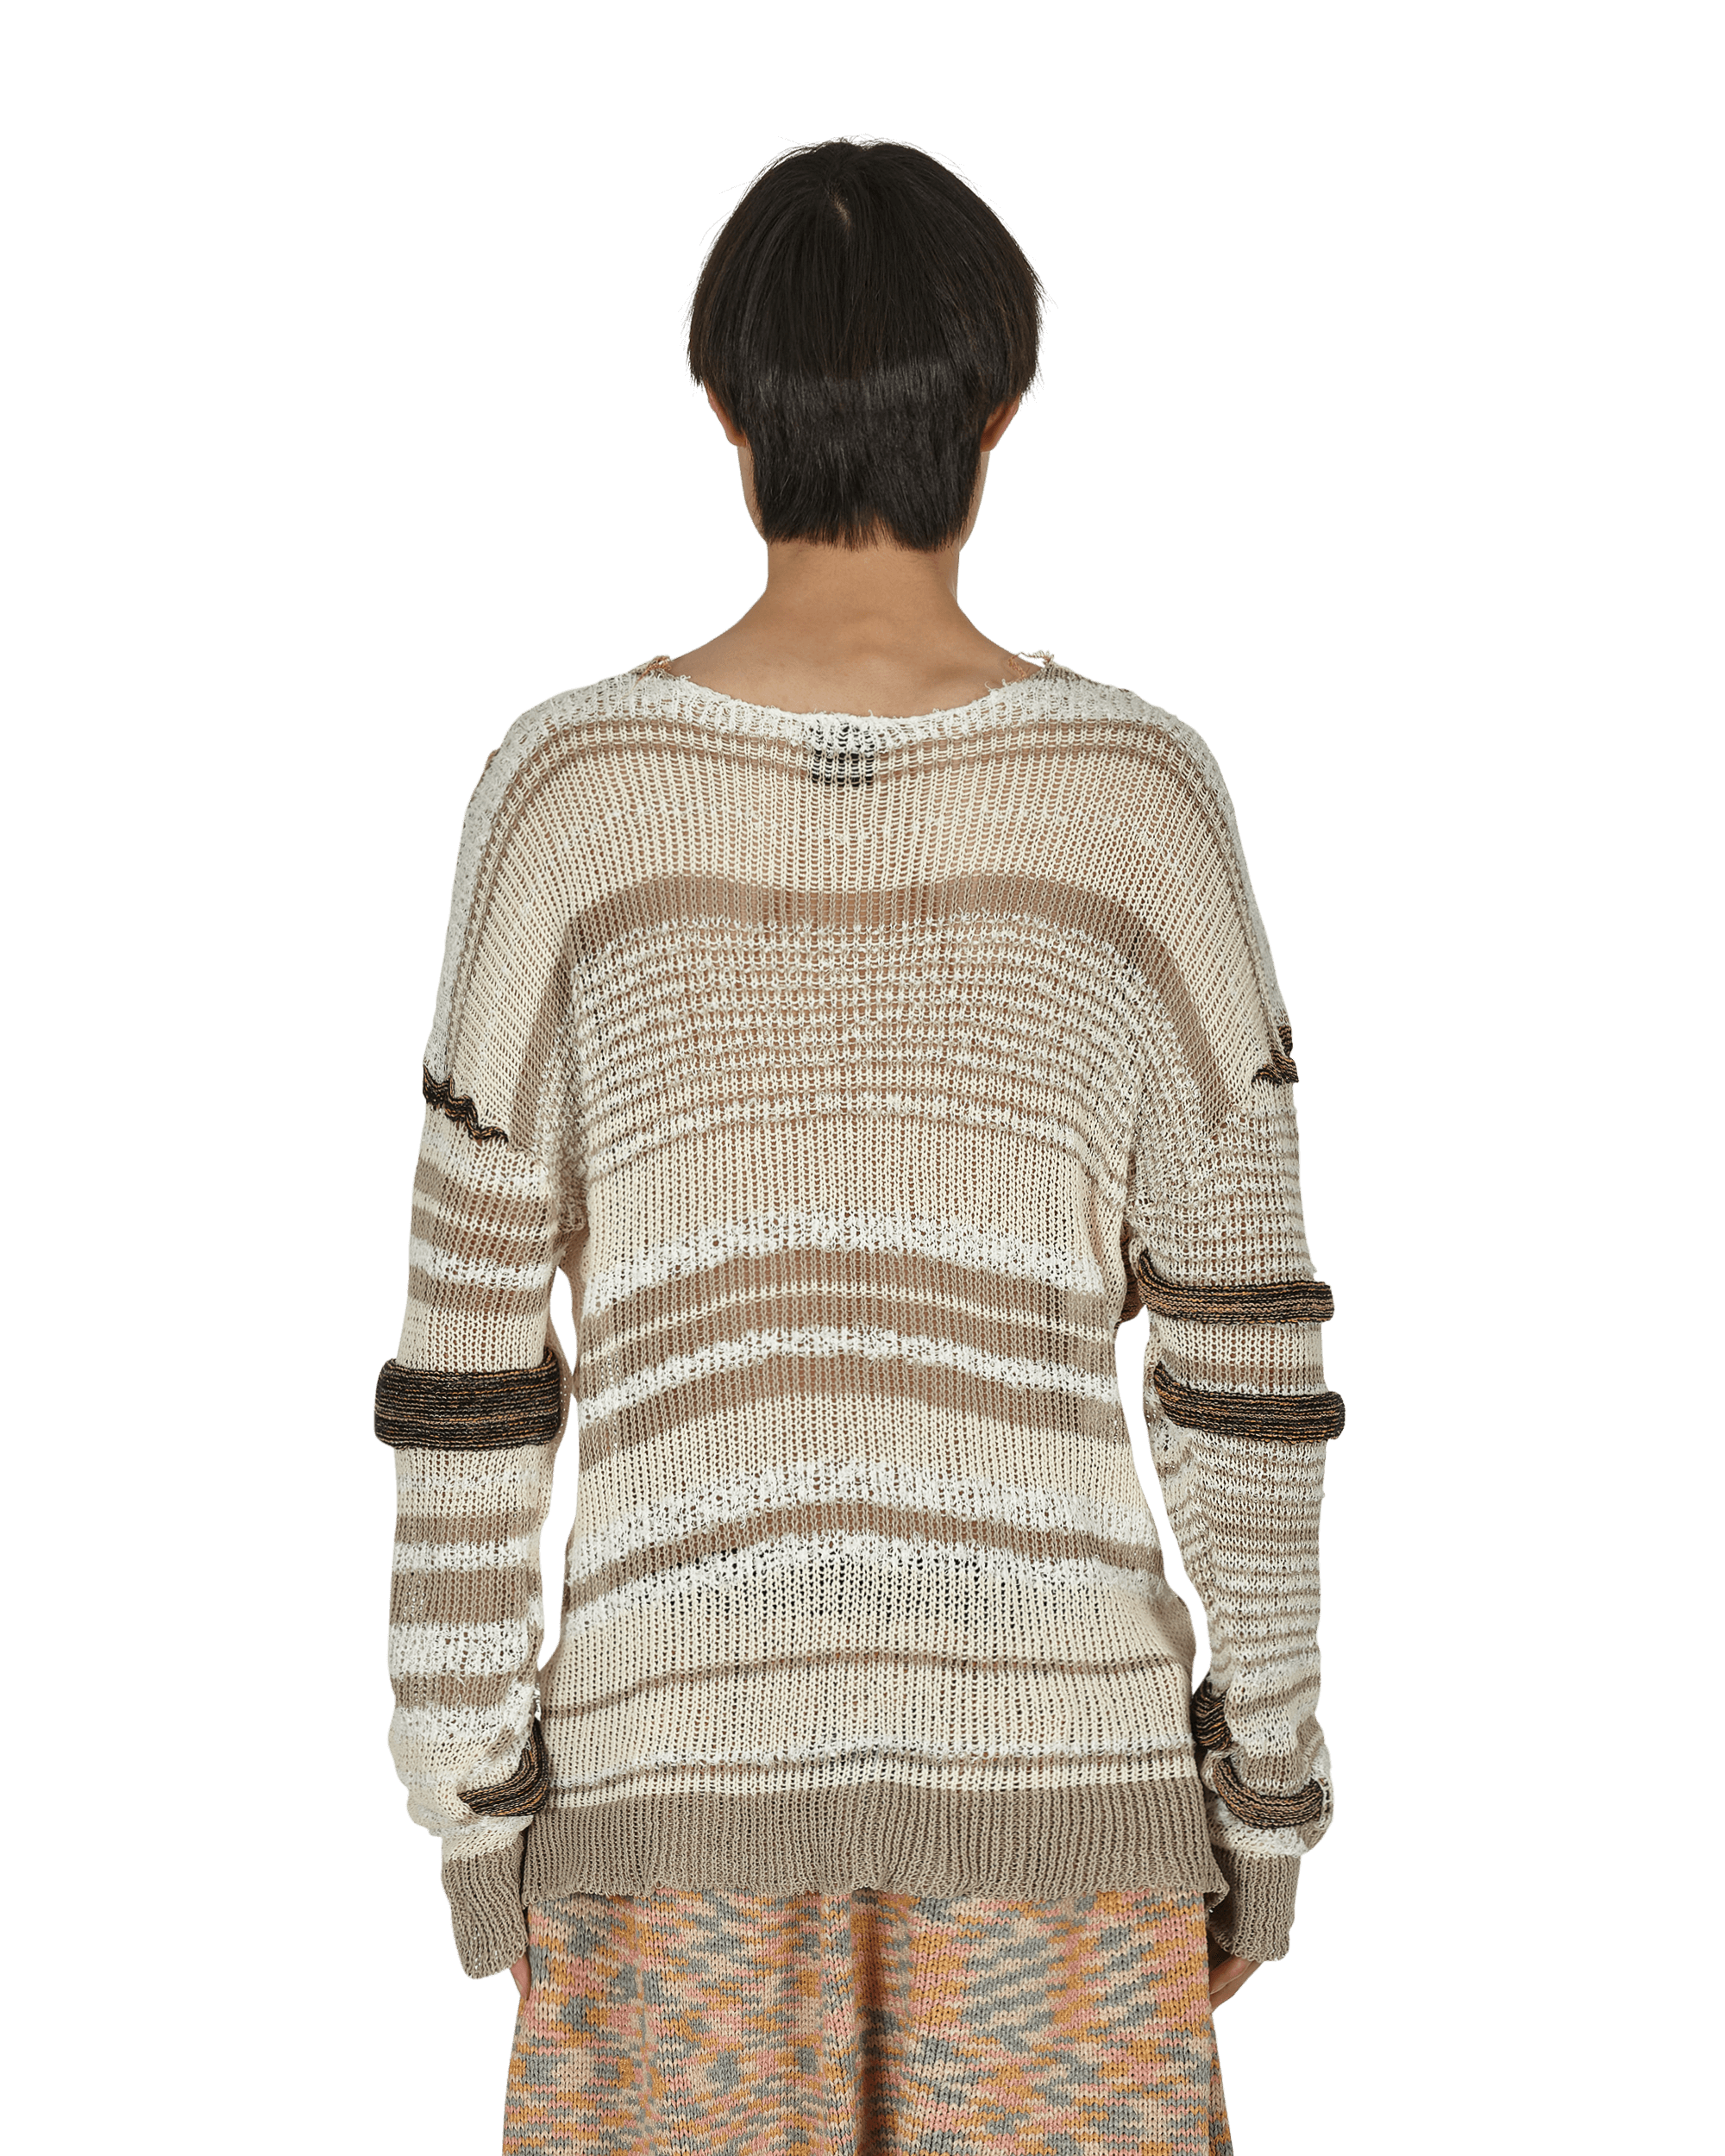 Vitelli Chaga Reverse Logo Stitch Sweater Grey/White Knitwears Sweaters SS22OKT010 008